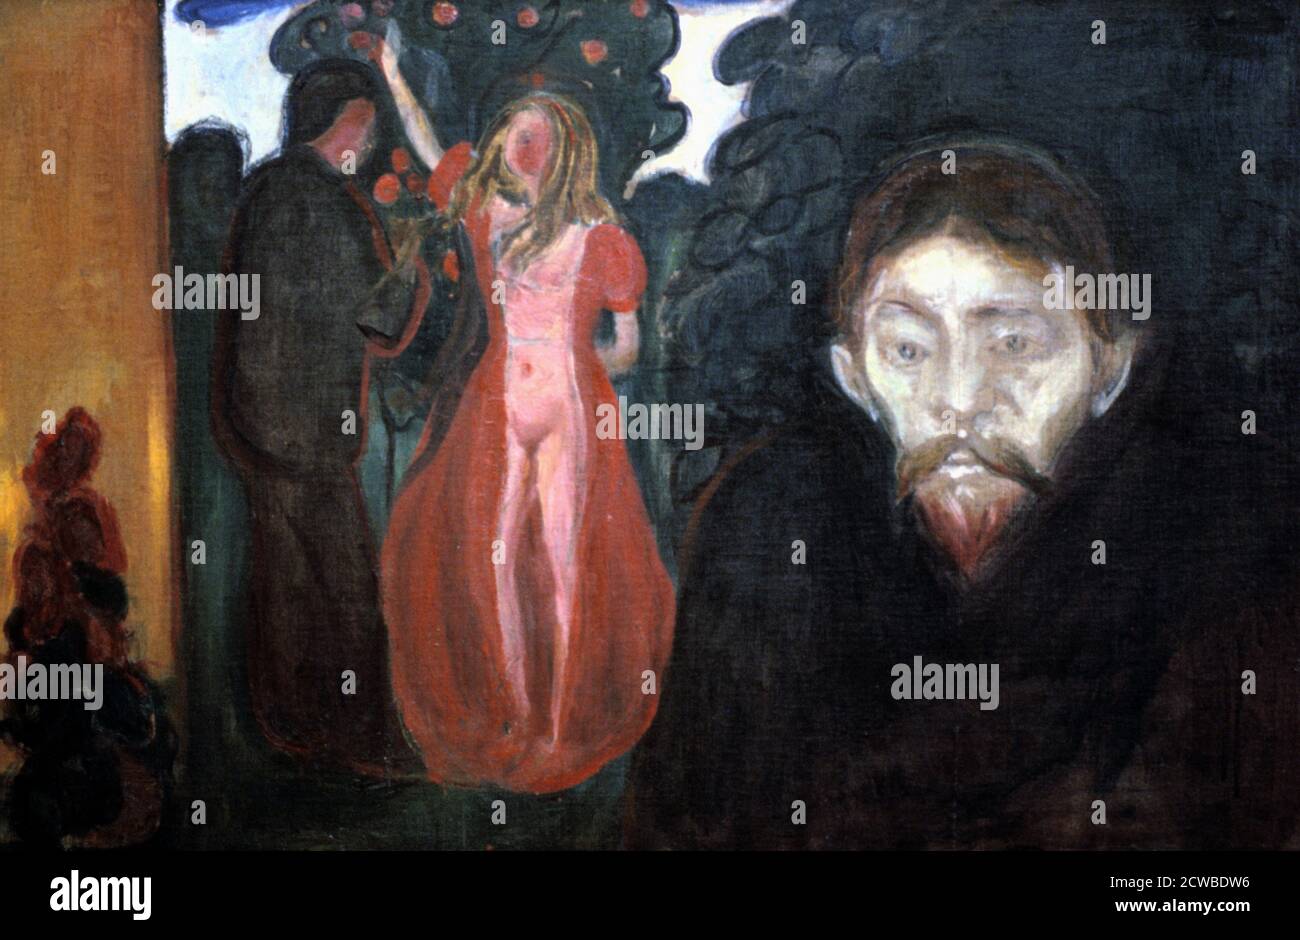 Eifersucht', 1895. Künstler: Edvard Munch. Edvard Munch ist ein norwegischer Maler, Expressionist und Drucker. Er spielte eine große Rolle im deutschen Expressionismus. Stockfoto